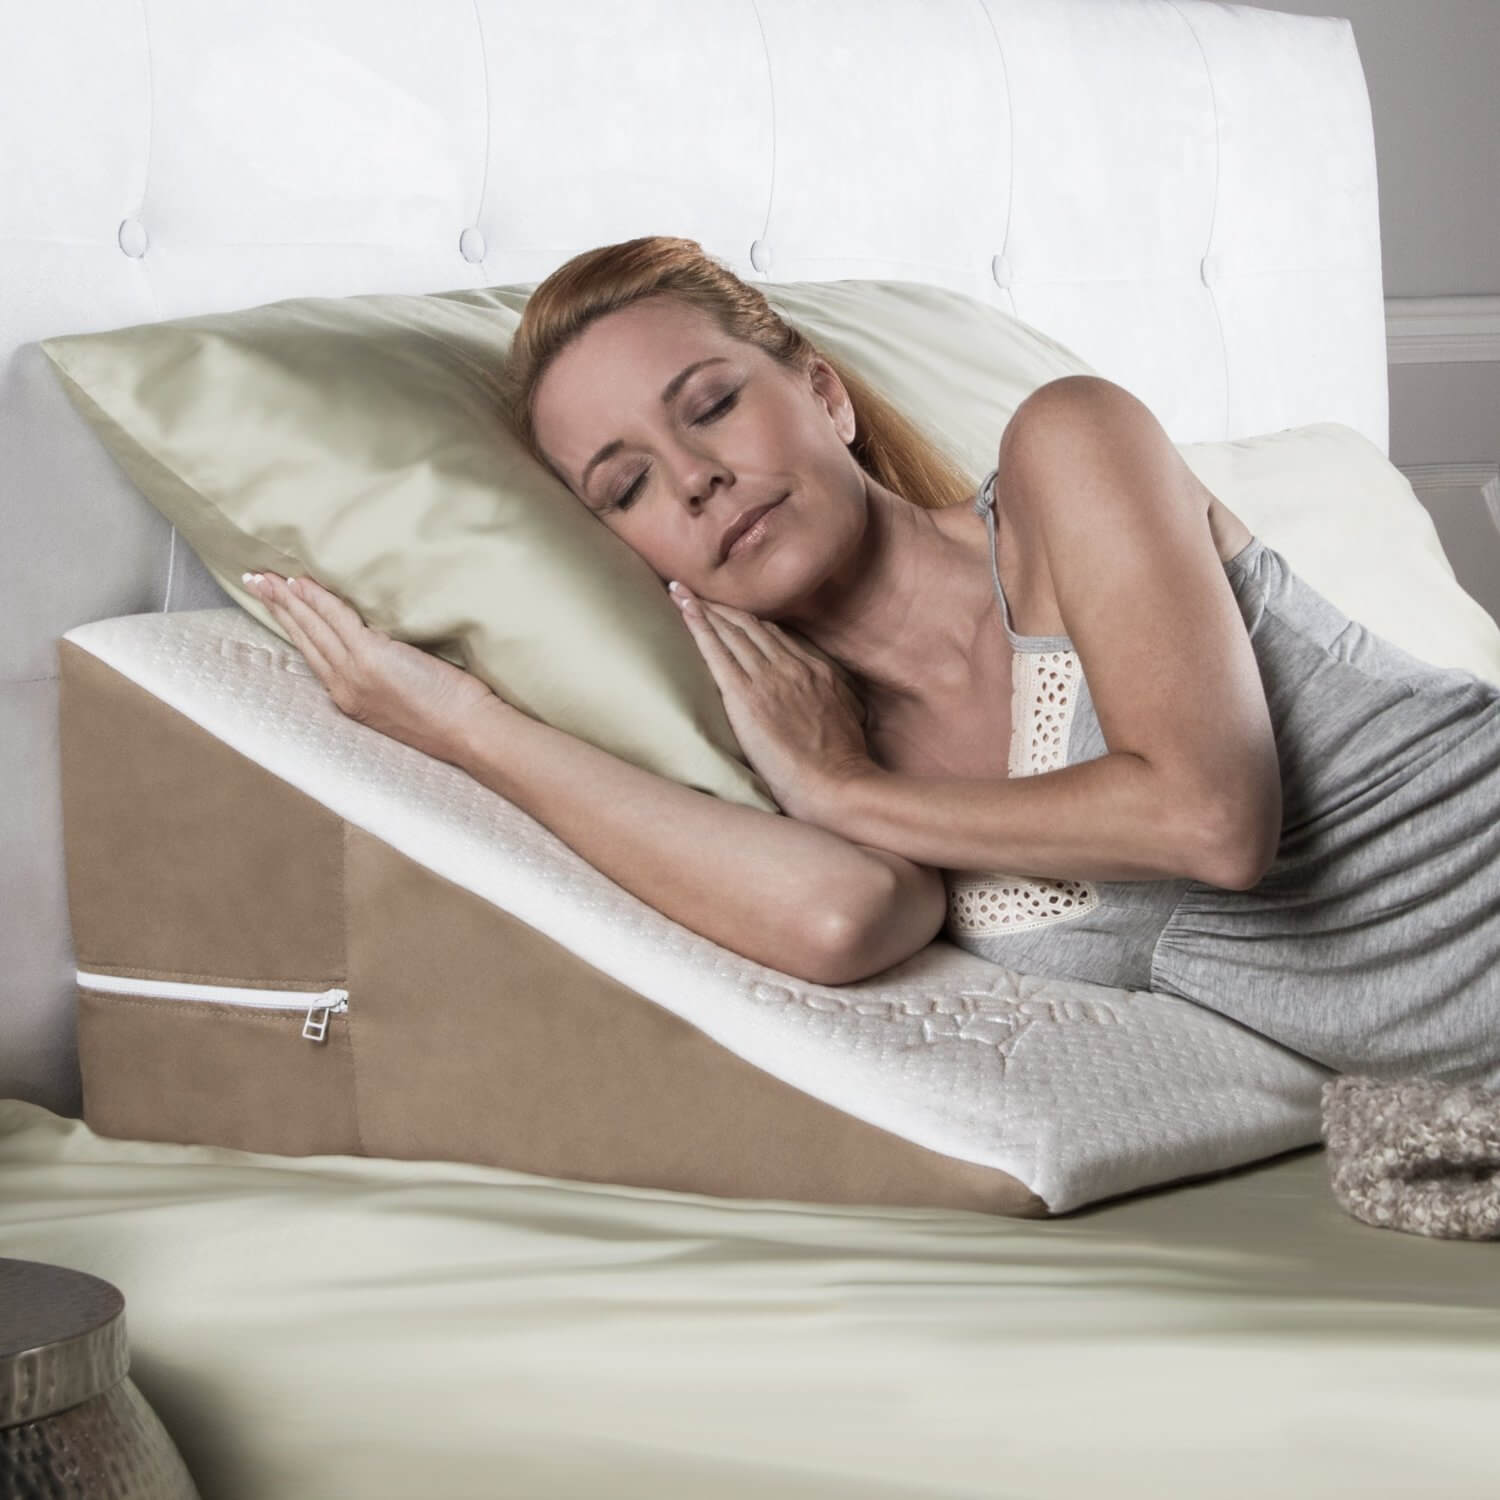 Chọn gối ngủ có độ cao phù hợp để hạn chế trào ngược dạ dày khi ngủ.